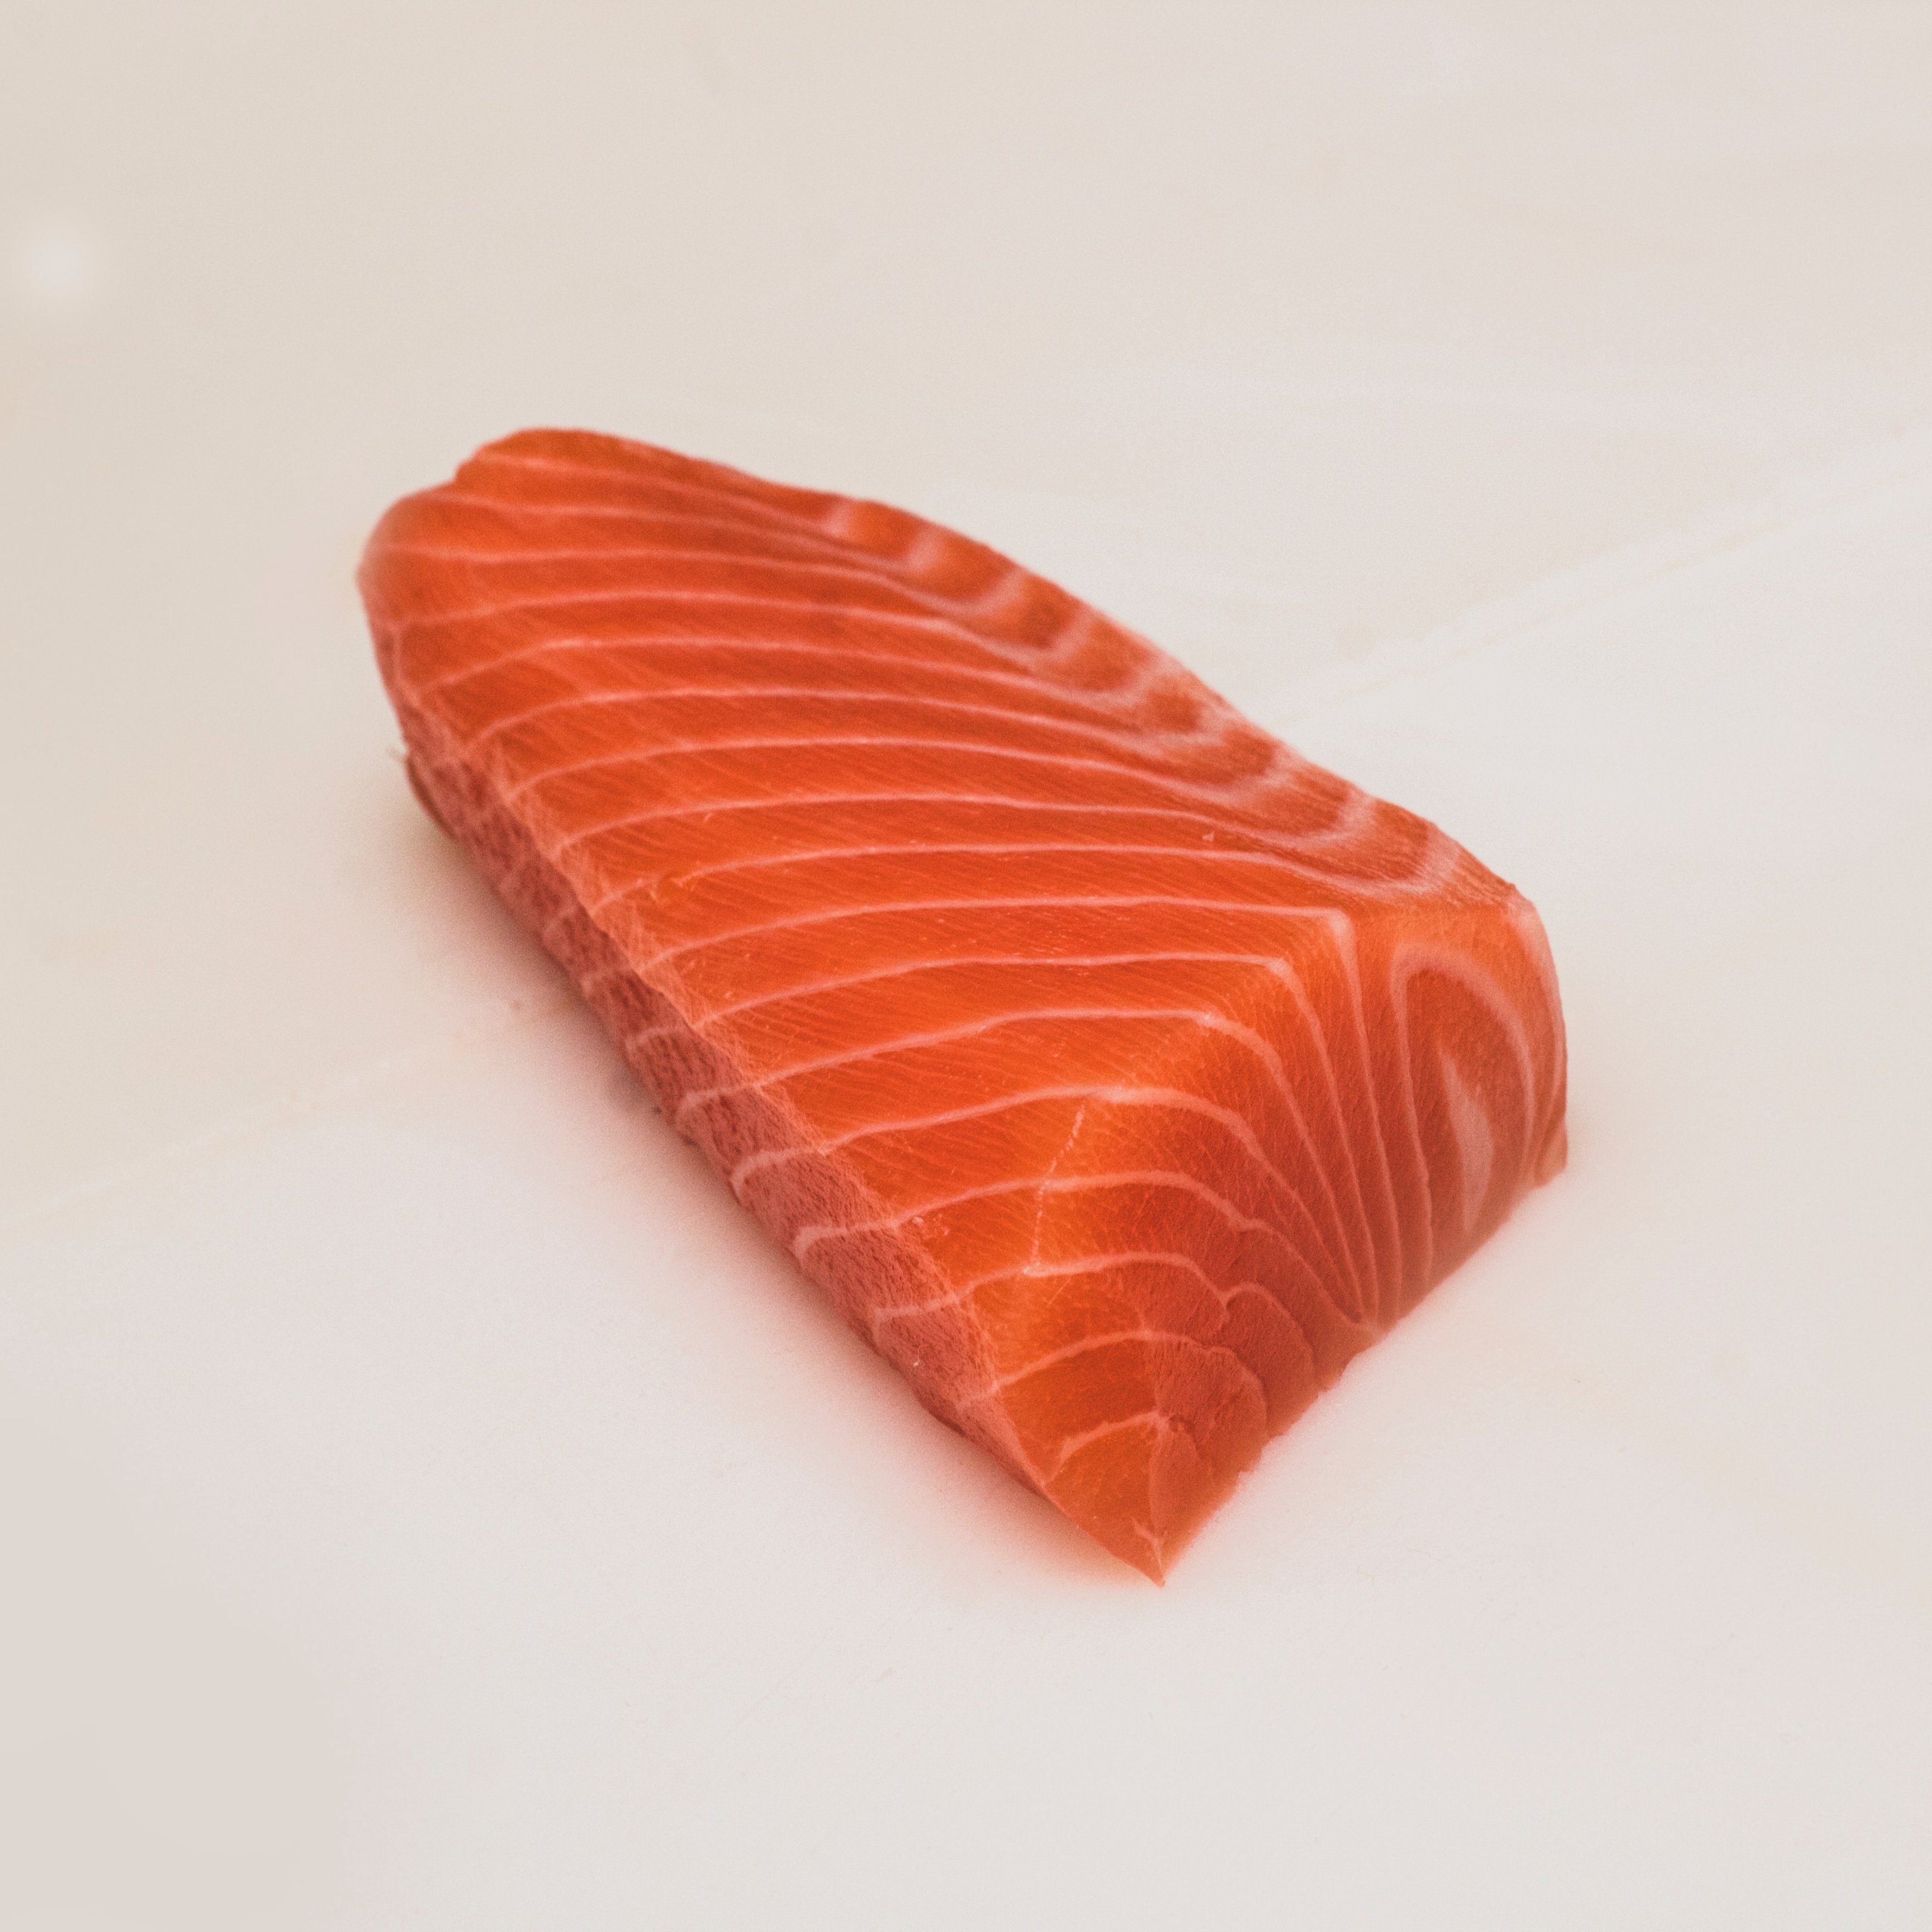 Deu raons per les quals hauries de menjar salmó regularment